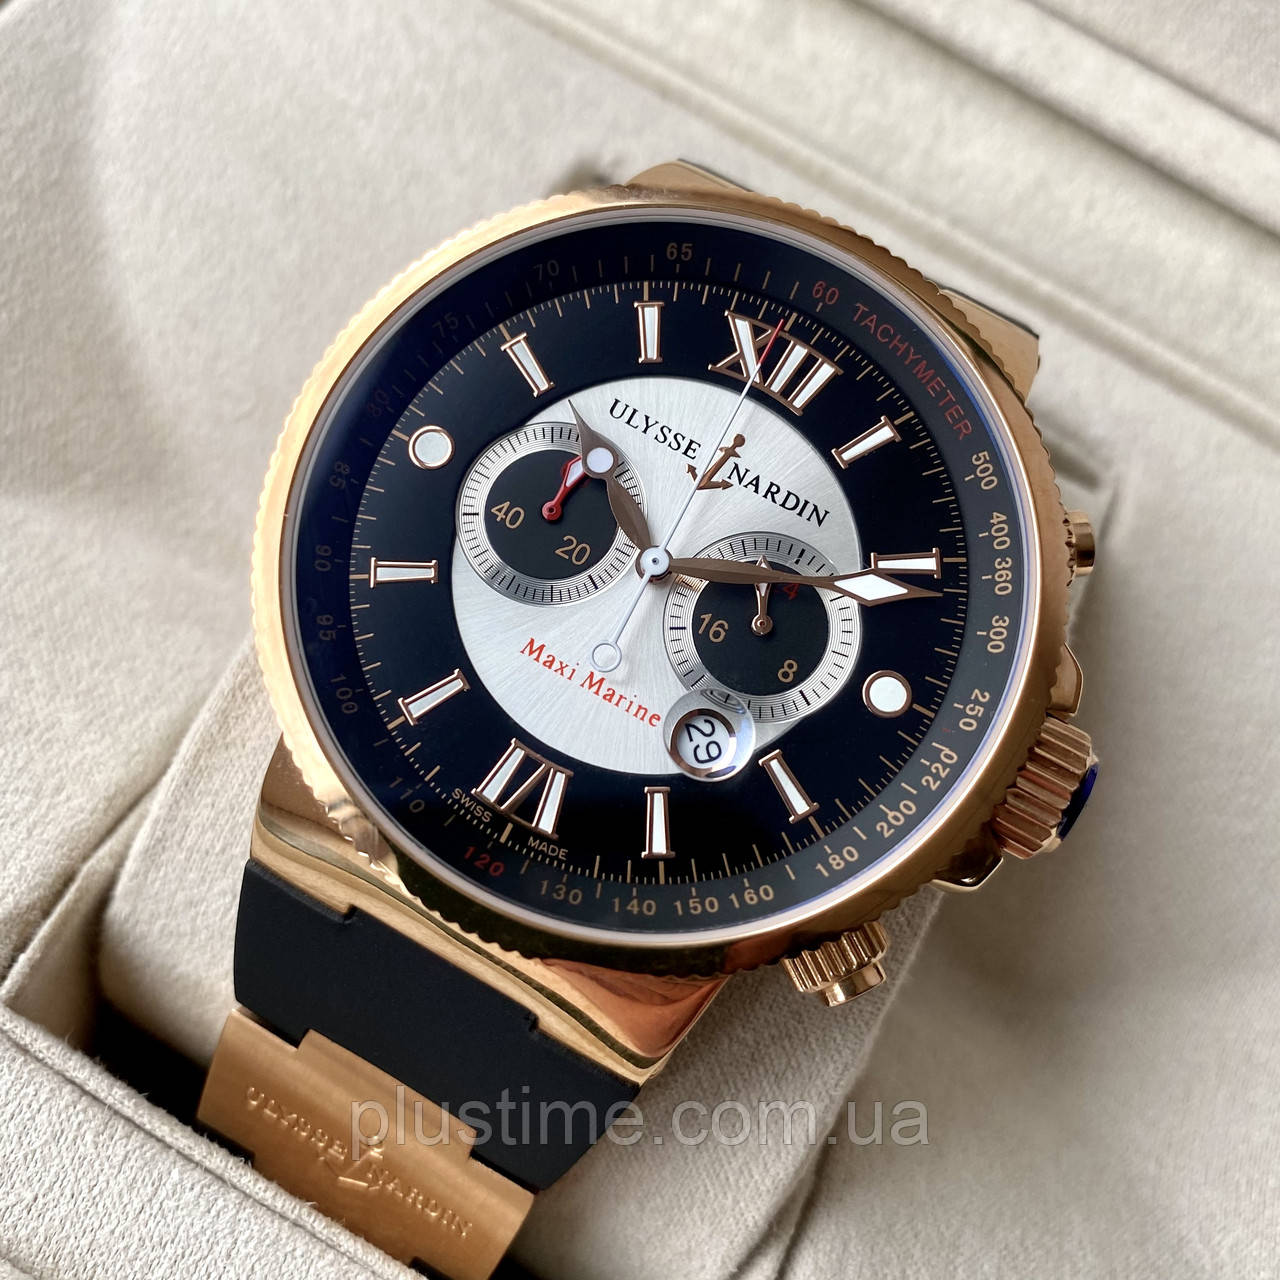 Чоловічий годинник Ulysse Nardin Maxi Marine Chronograph Black Gold ААА наручний кварцовий з хронографом і датою